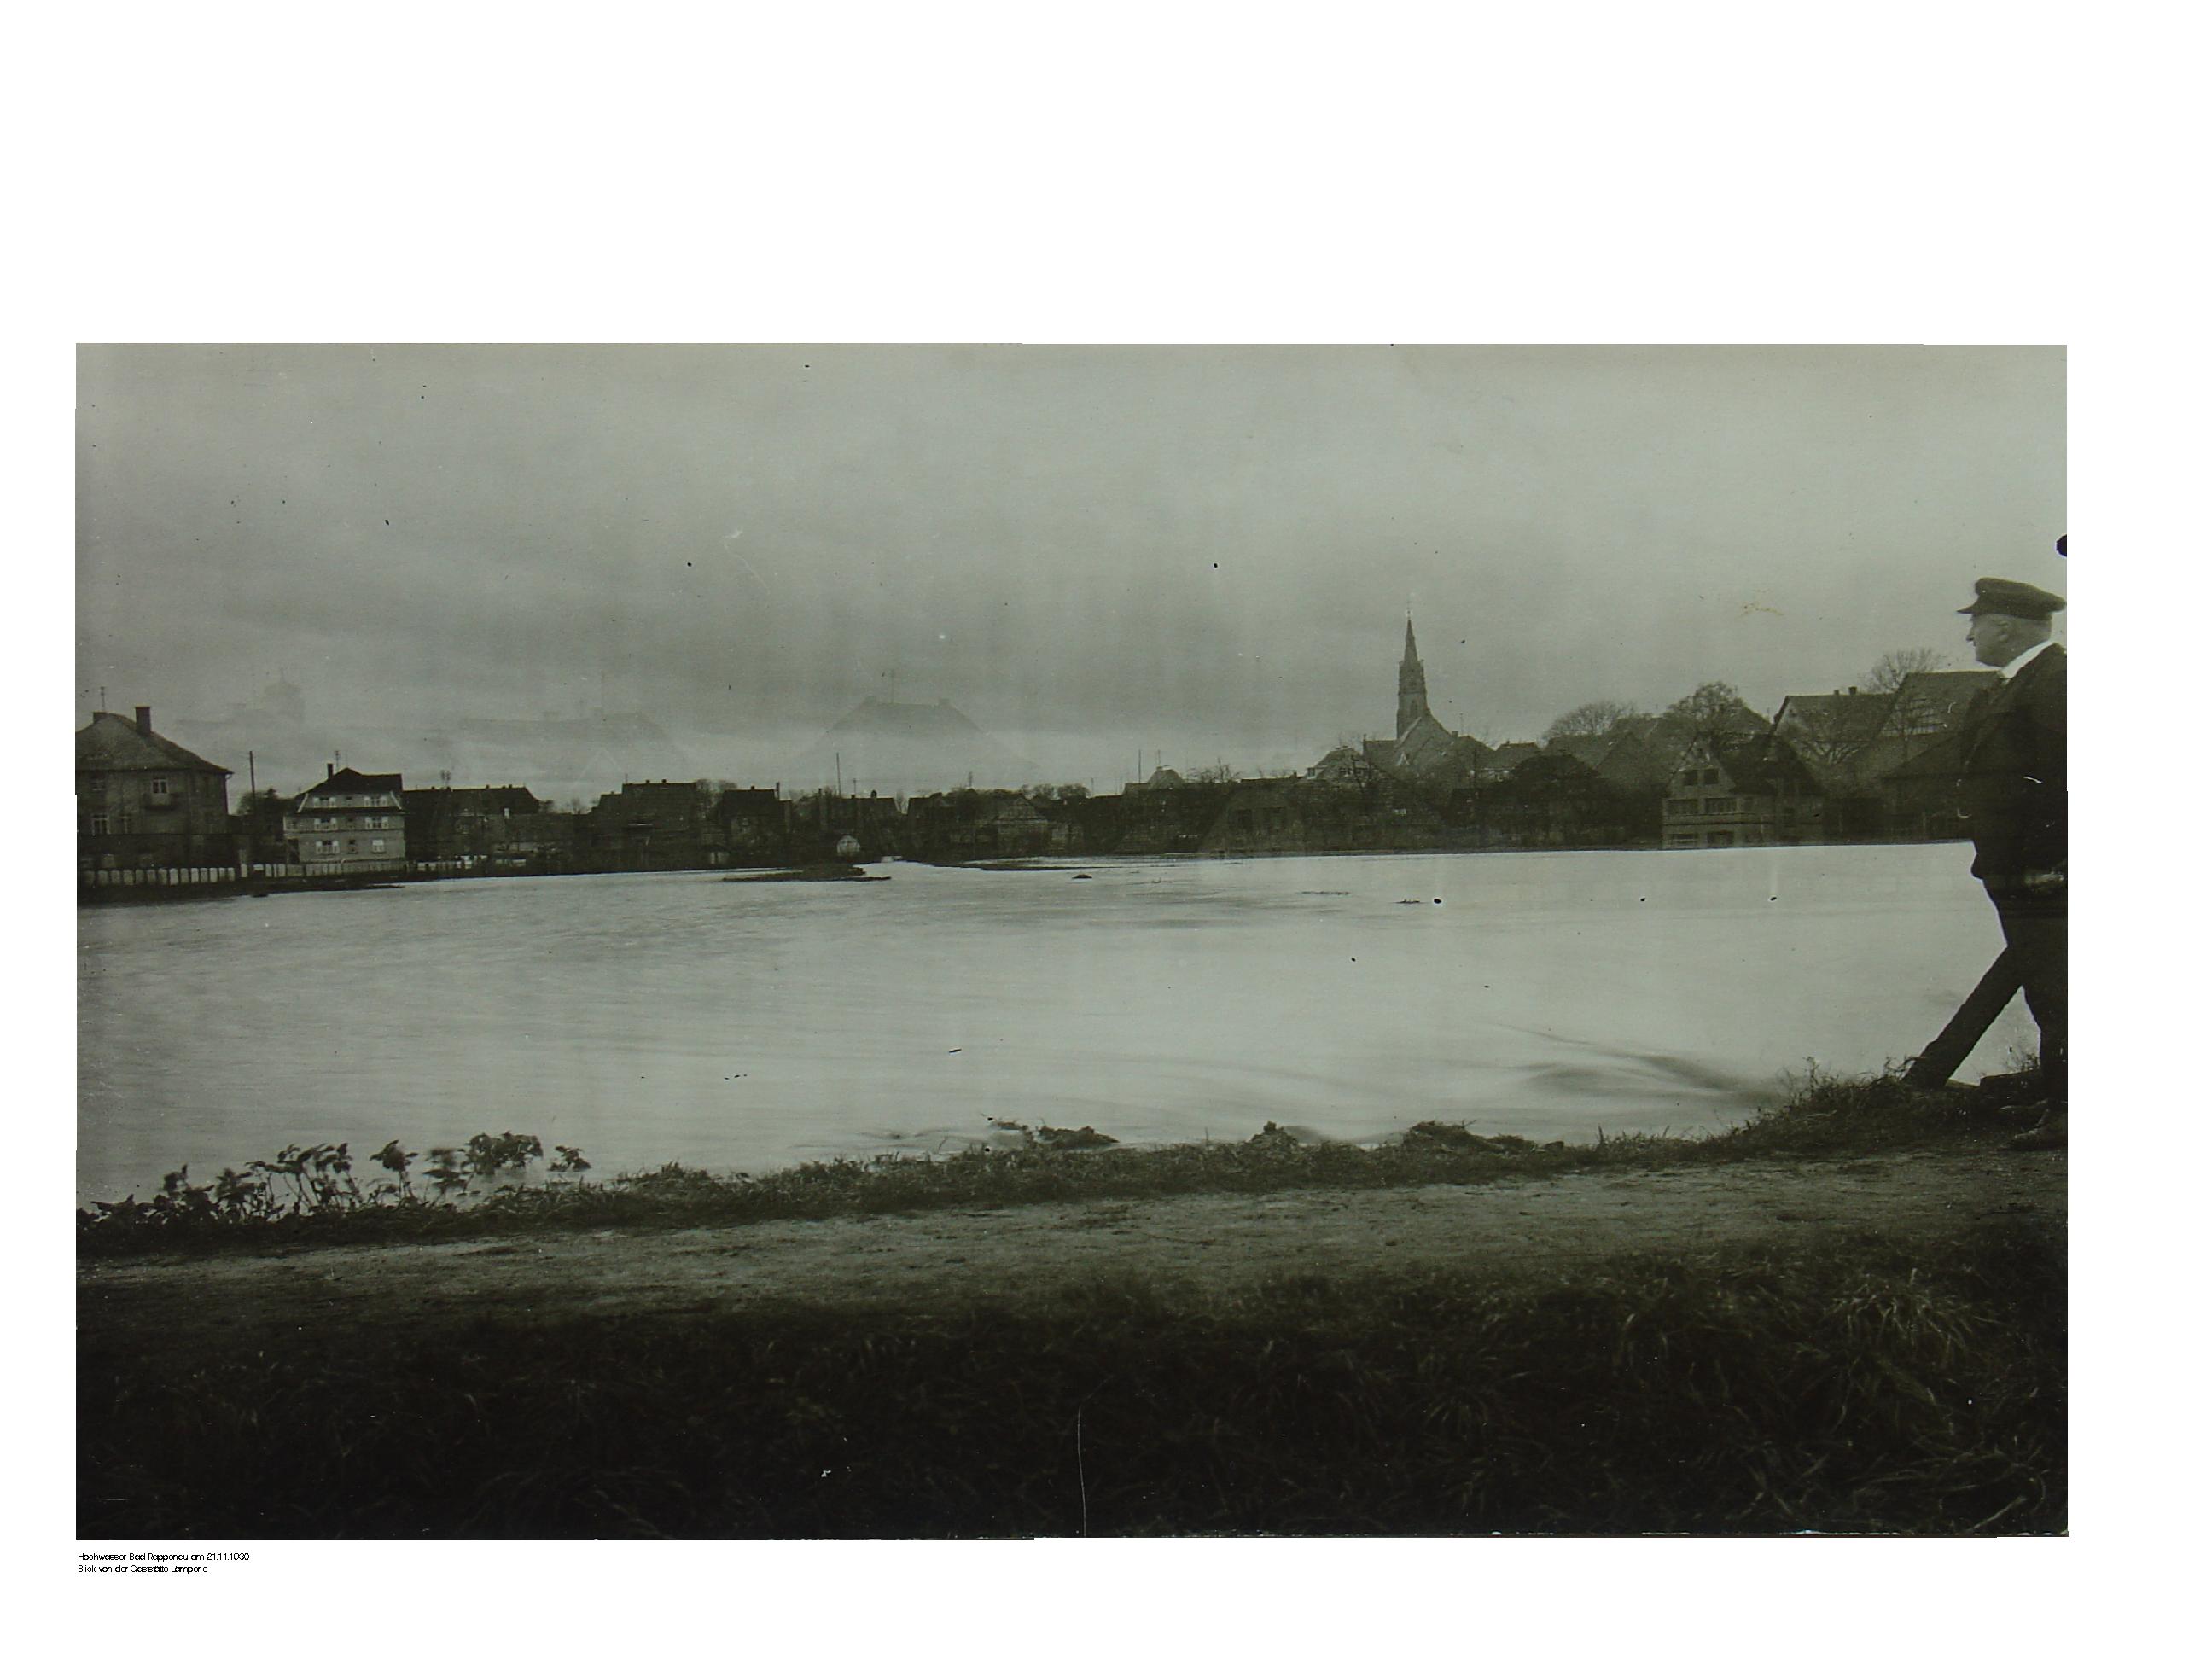 Historisches Jahrhunderthochwasser in Bad Rappenau am 21.11.1930